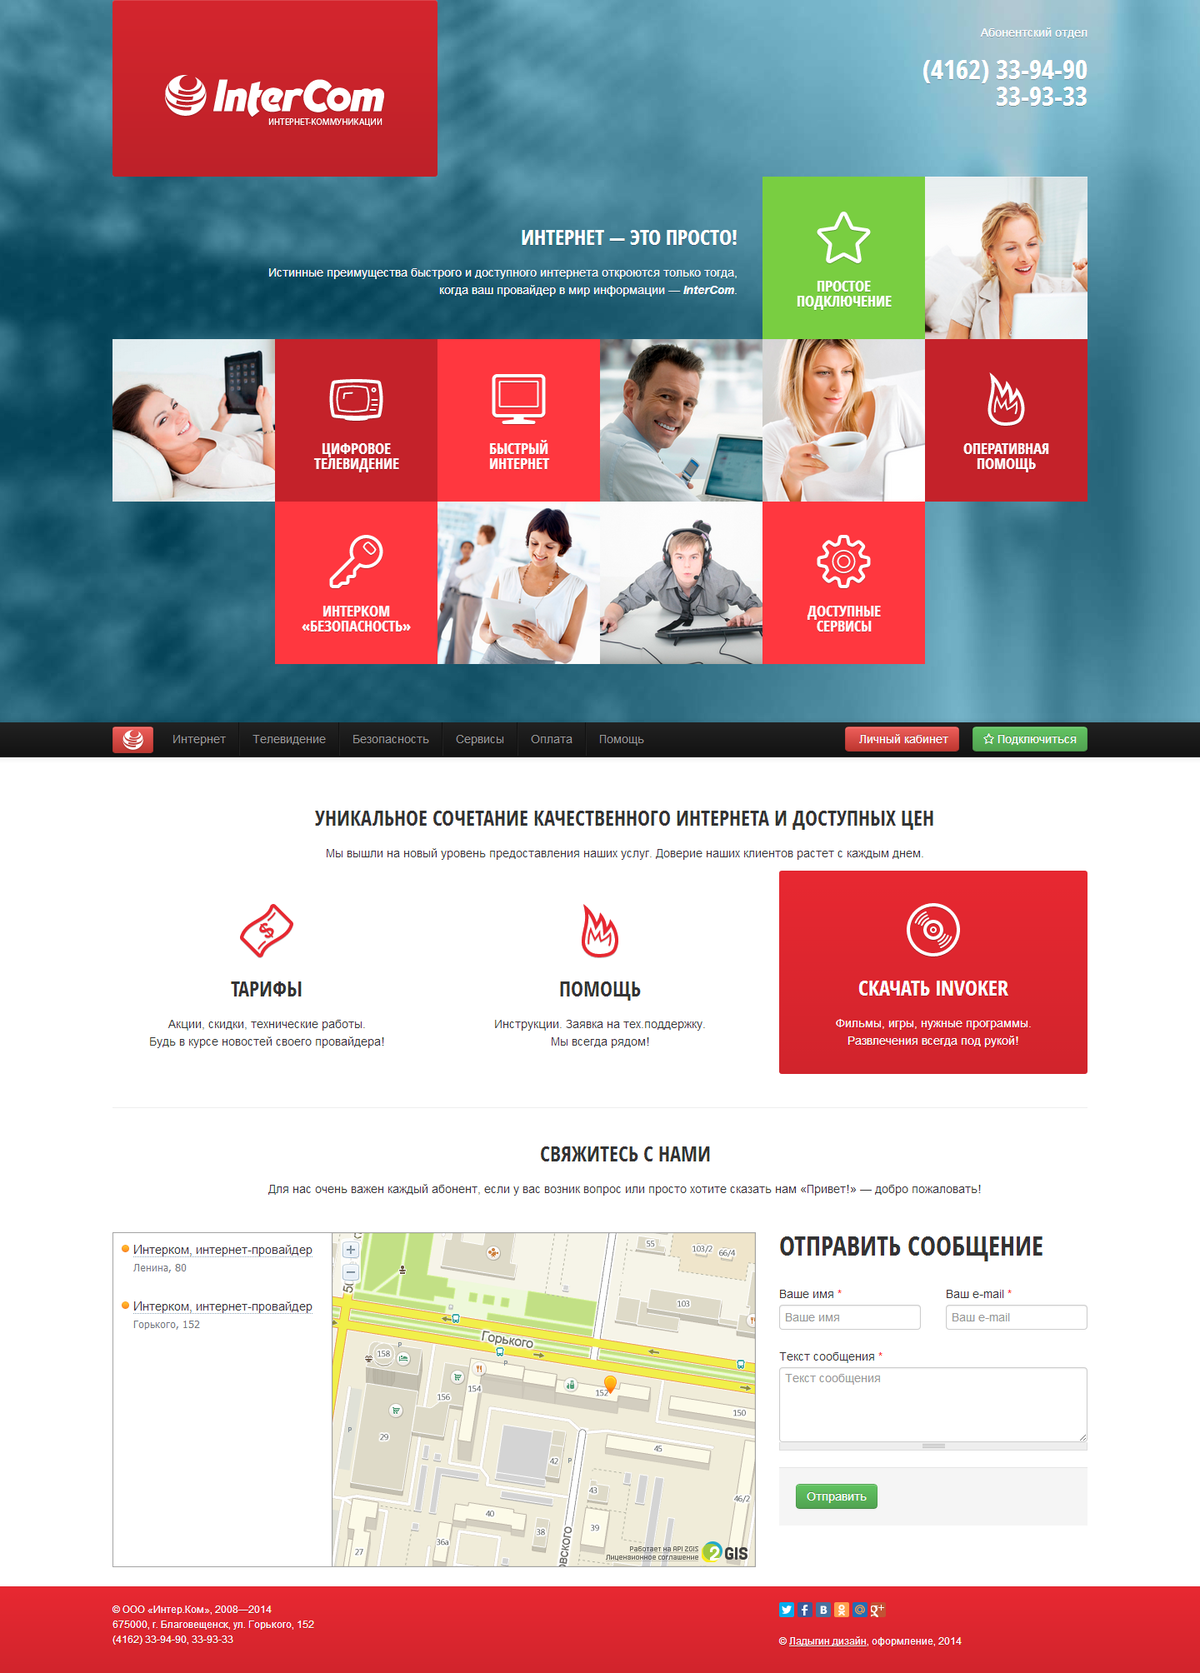 Официальный сайт интернет-провайдера «Интерком» / Проект компании Ладыгин дизайн